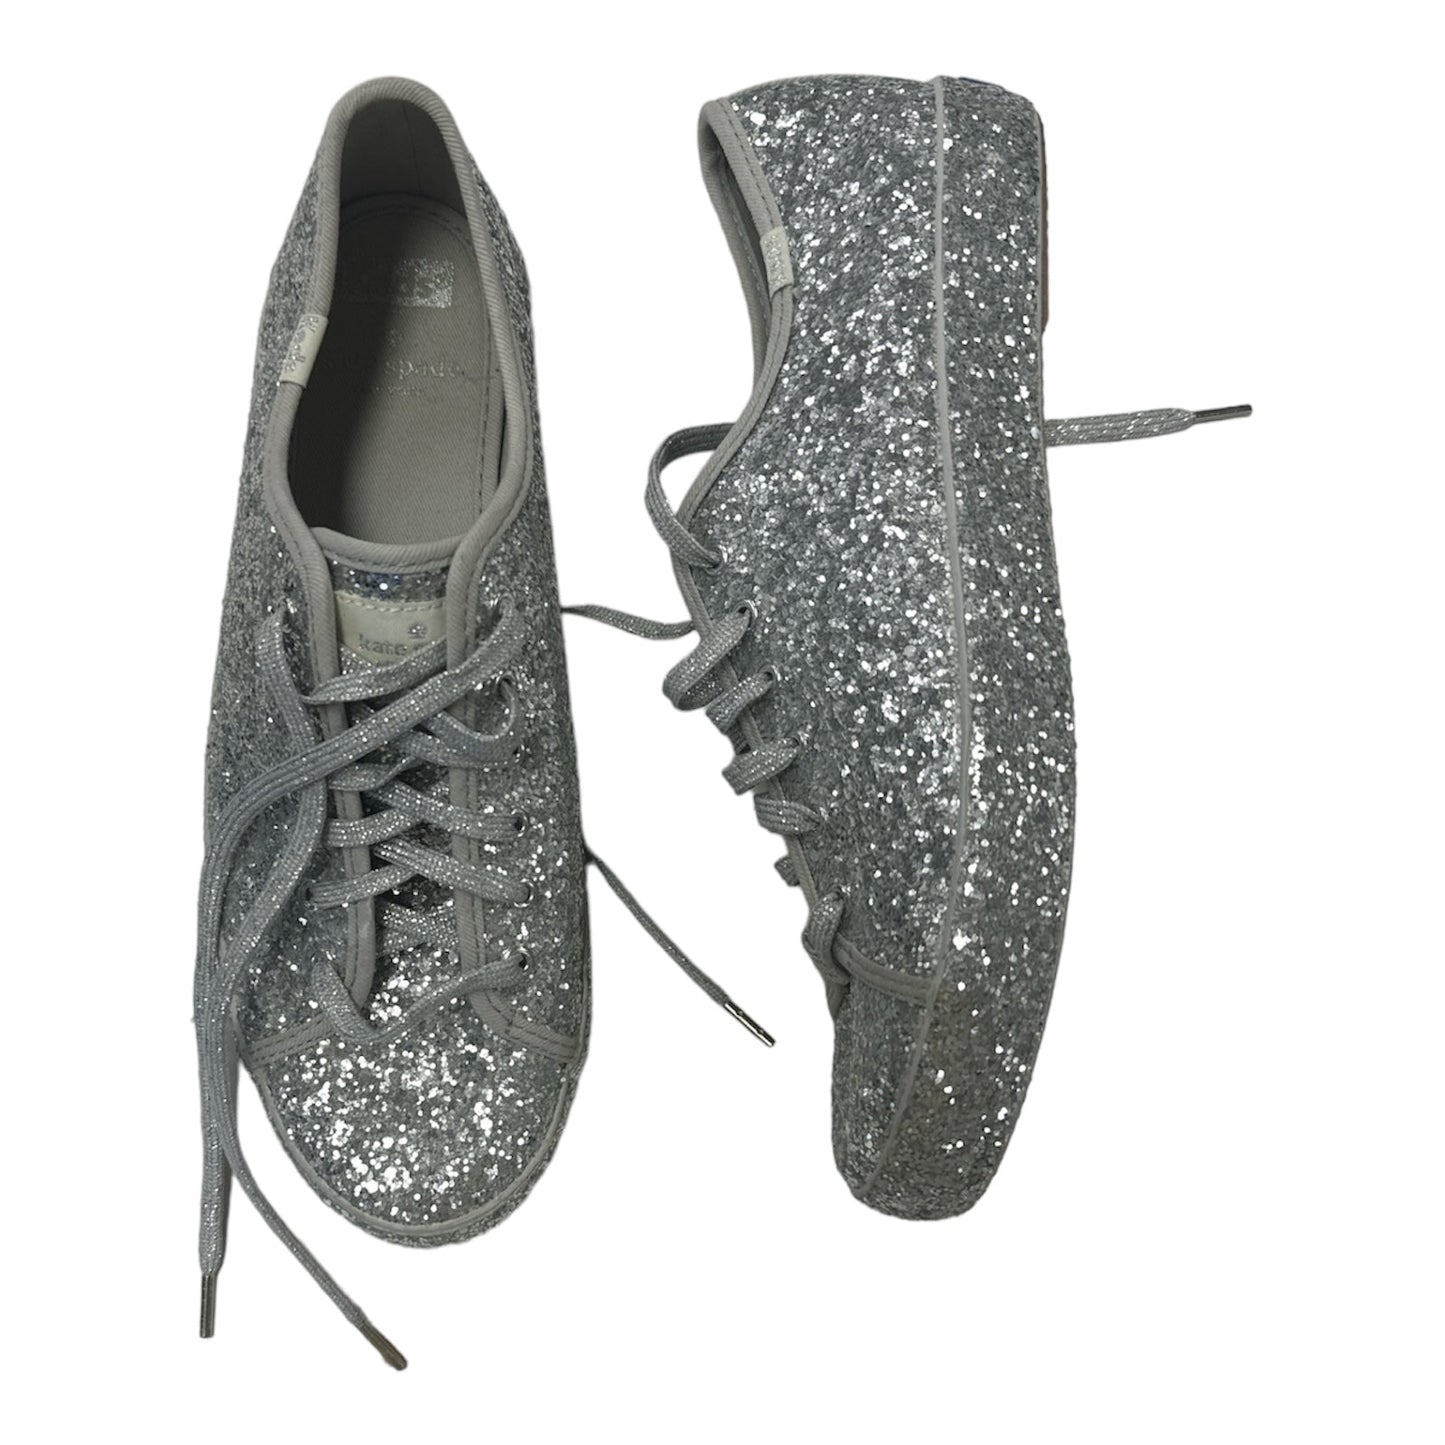 Silver Shoes Designer Keds, Size 8